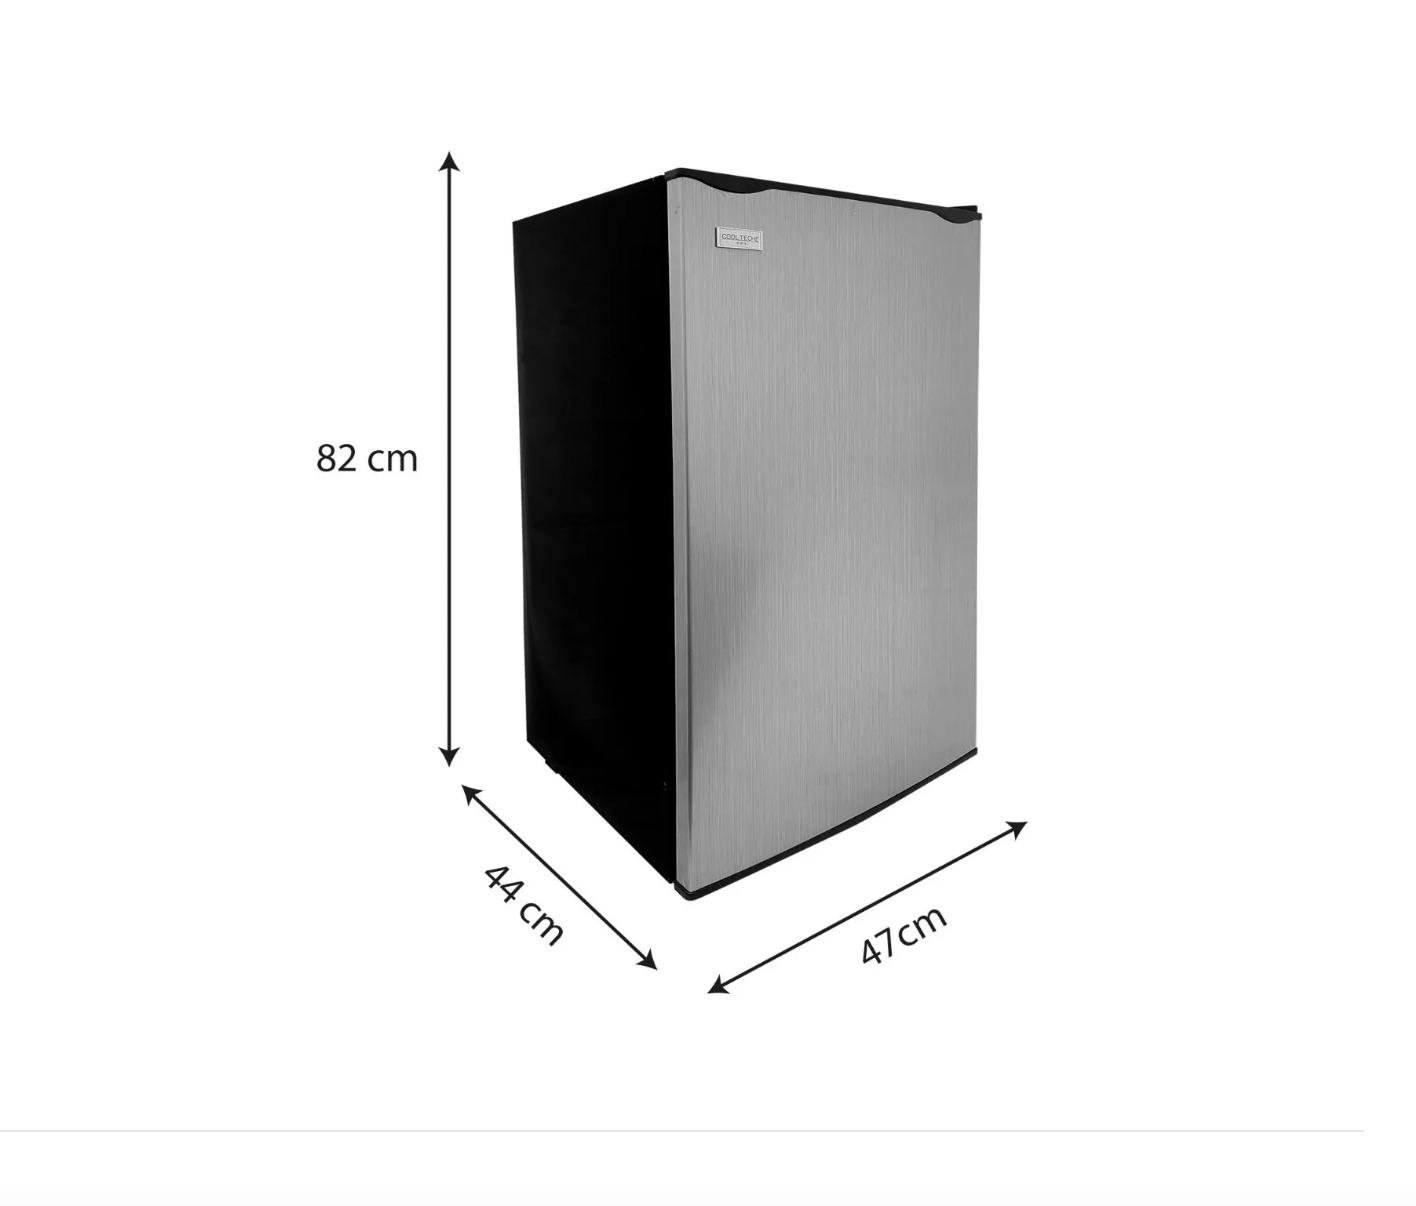 Refrigerador compacto de 3.2 pies cúbicos, mini refrigerador de 2 puertas  con congelador, ahorro de energía, LED interior, bajo ruido, refrigerador